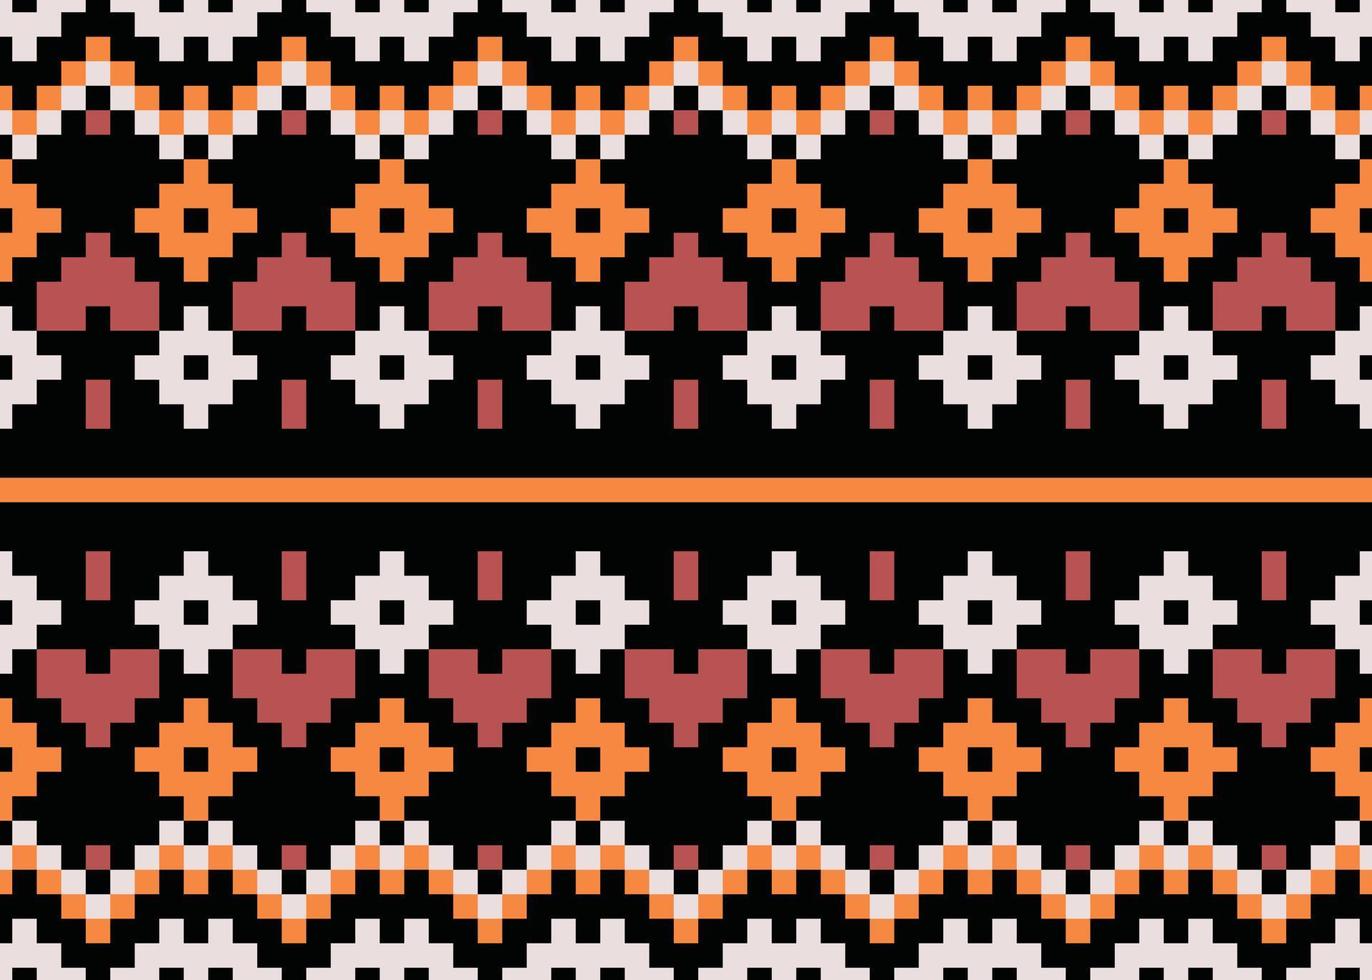 asteca nação navajo design de padrões de tecido africano para impressões fundo papel de parede textura vestido moda tecido tapete de papel indústria têxtil vetor